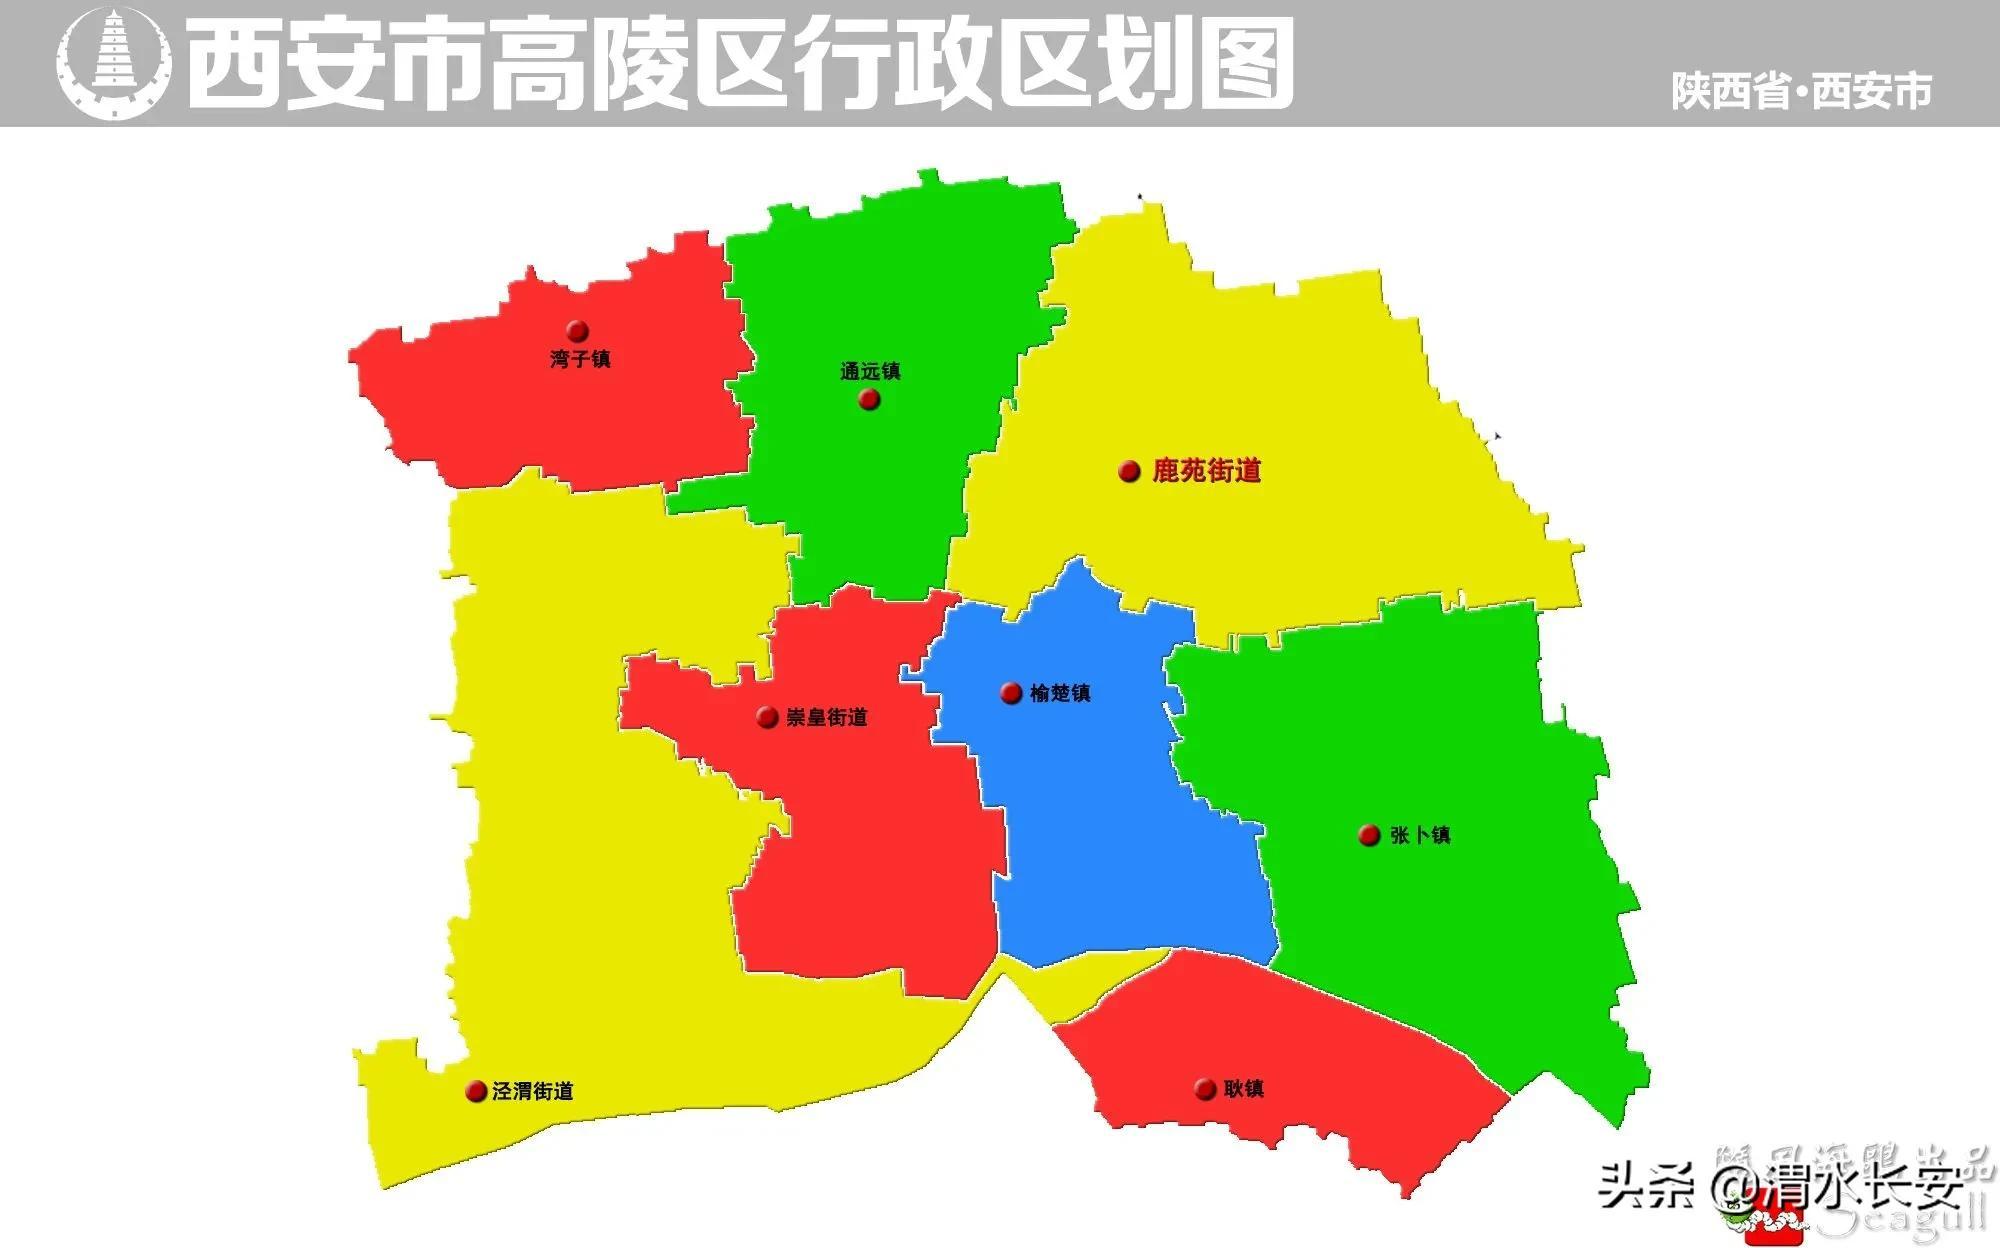 【西安市区县13个 国家级开发区7个 代管区1个】行政区域11区2县:未央